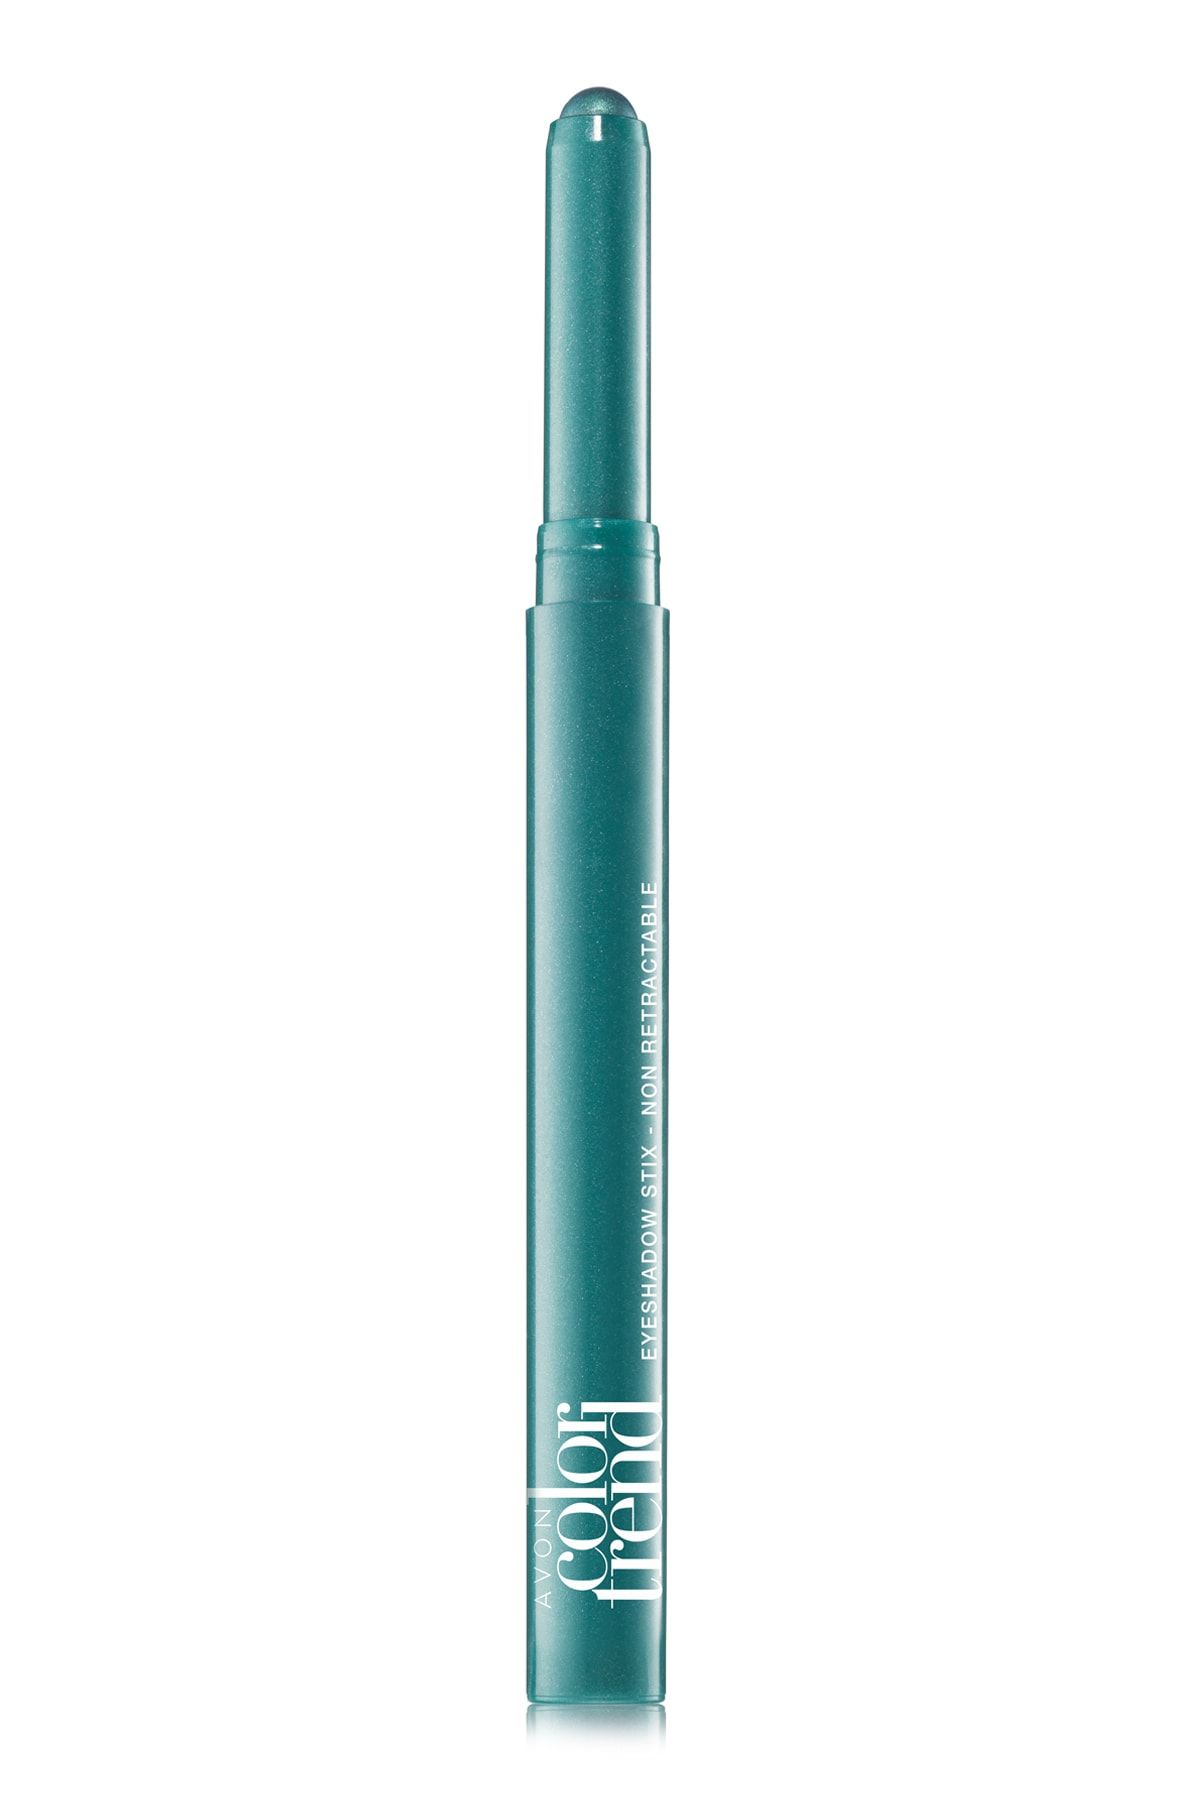 Avon Color Trend Göz Farı - Aquamarine 12 g 8681298933830